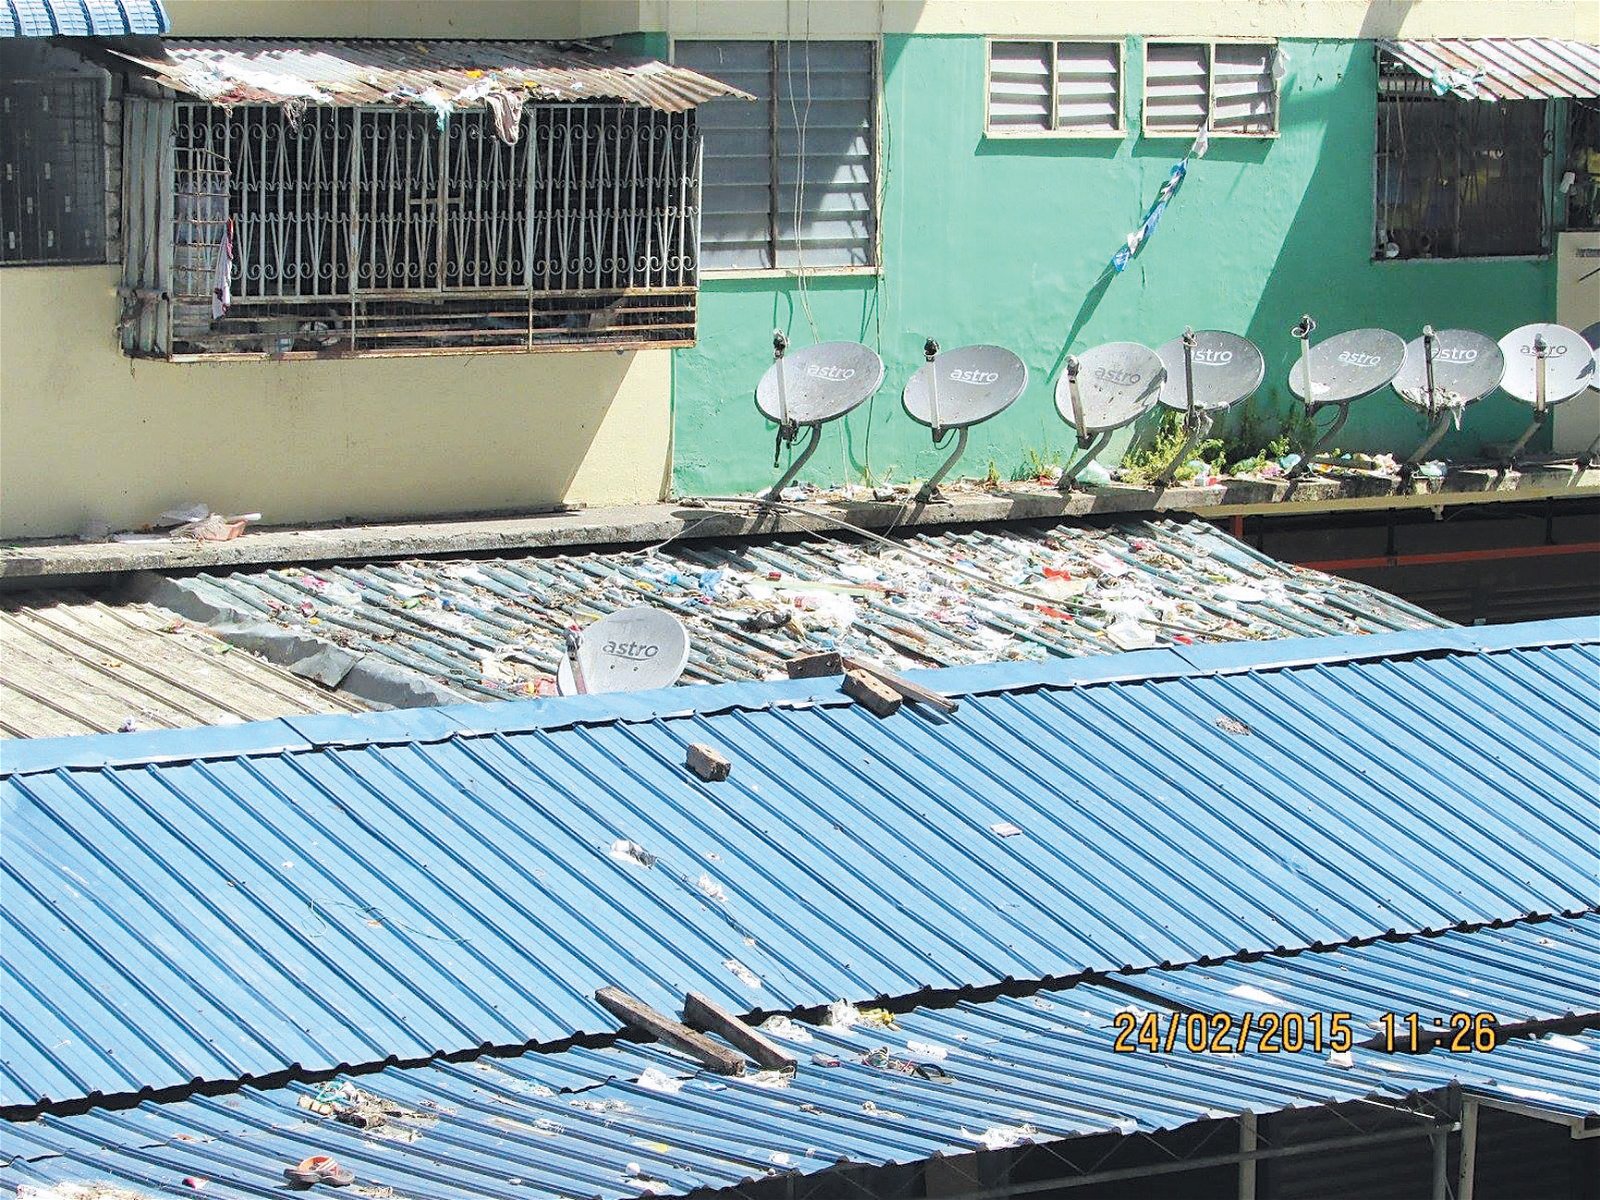 组屋外屋顶被居民乱丢垃圾造成卫生环境恶劣，惟管理层视而不见，受影响居民投诉无门。